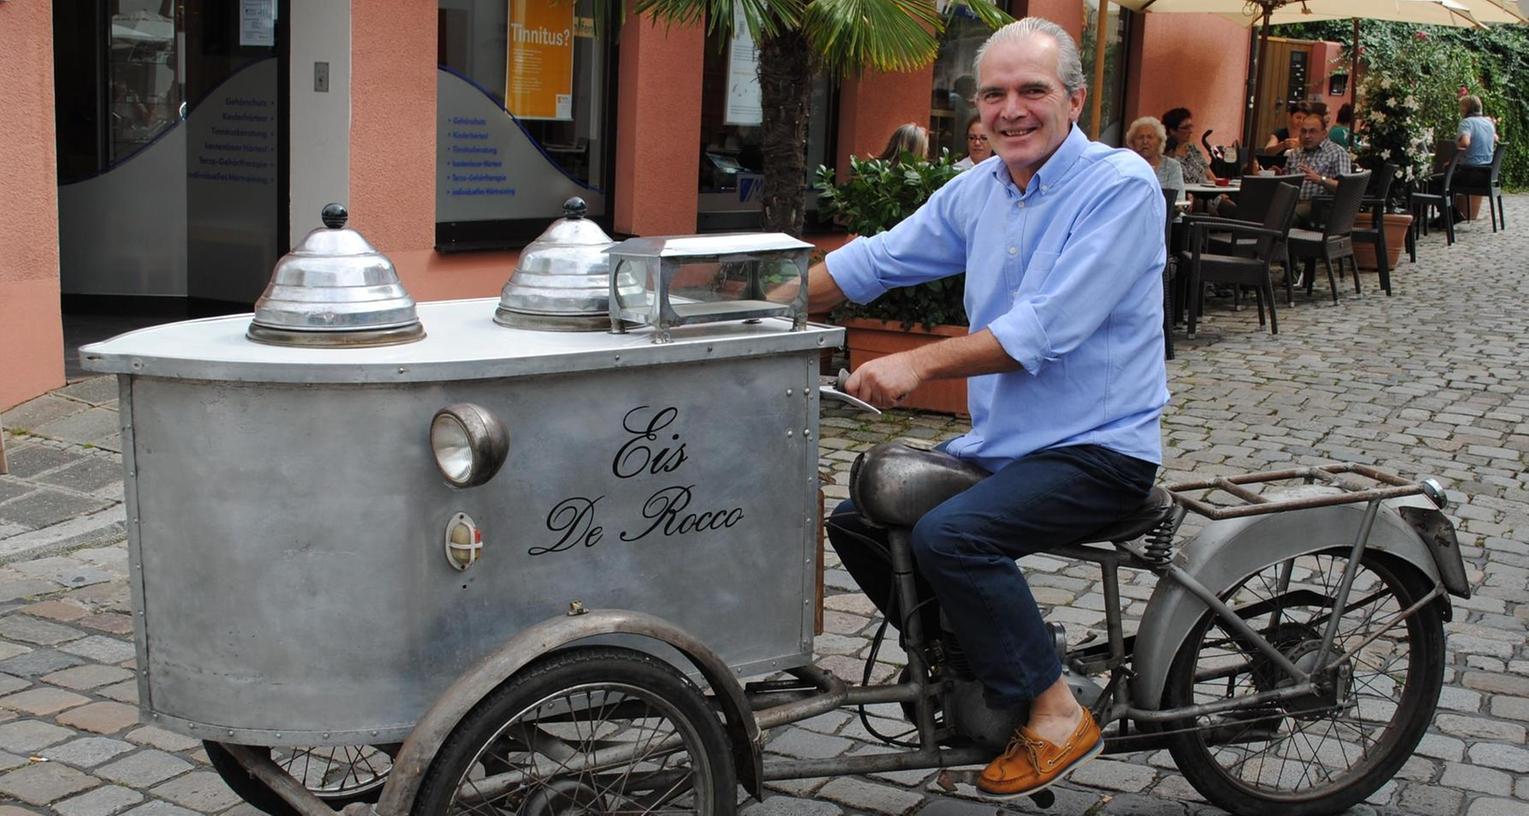 Eis-Motorrad aus den 50er Jahren ziert das Eiscafé De Rocco